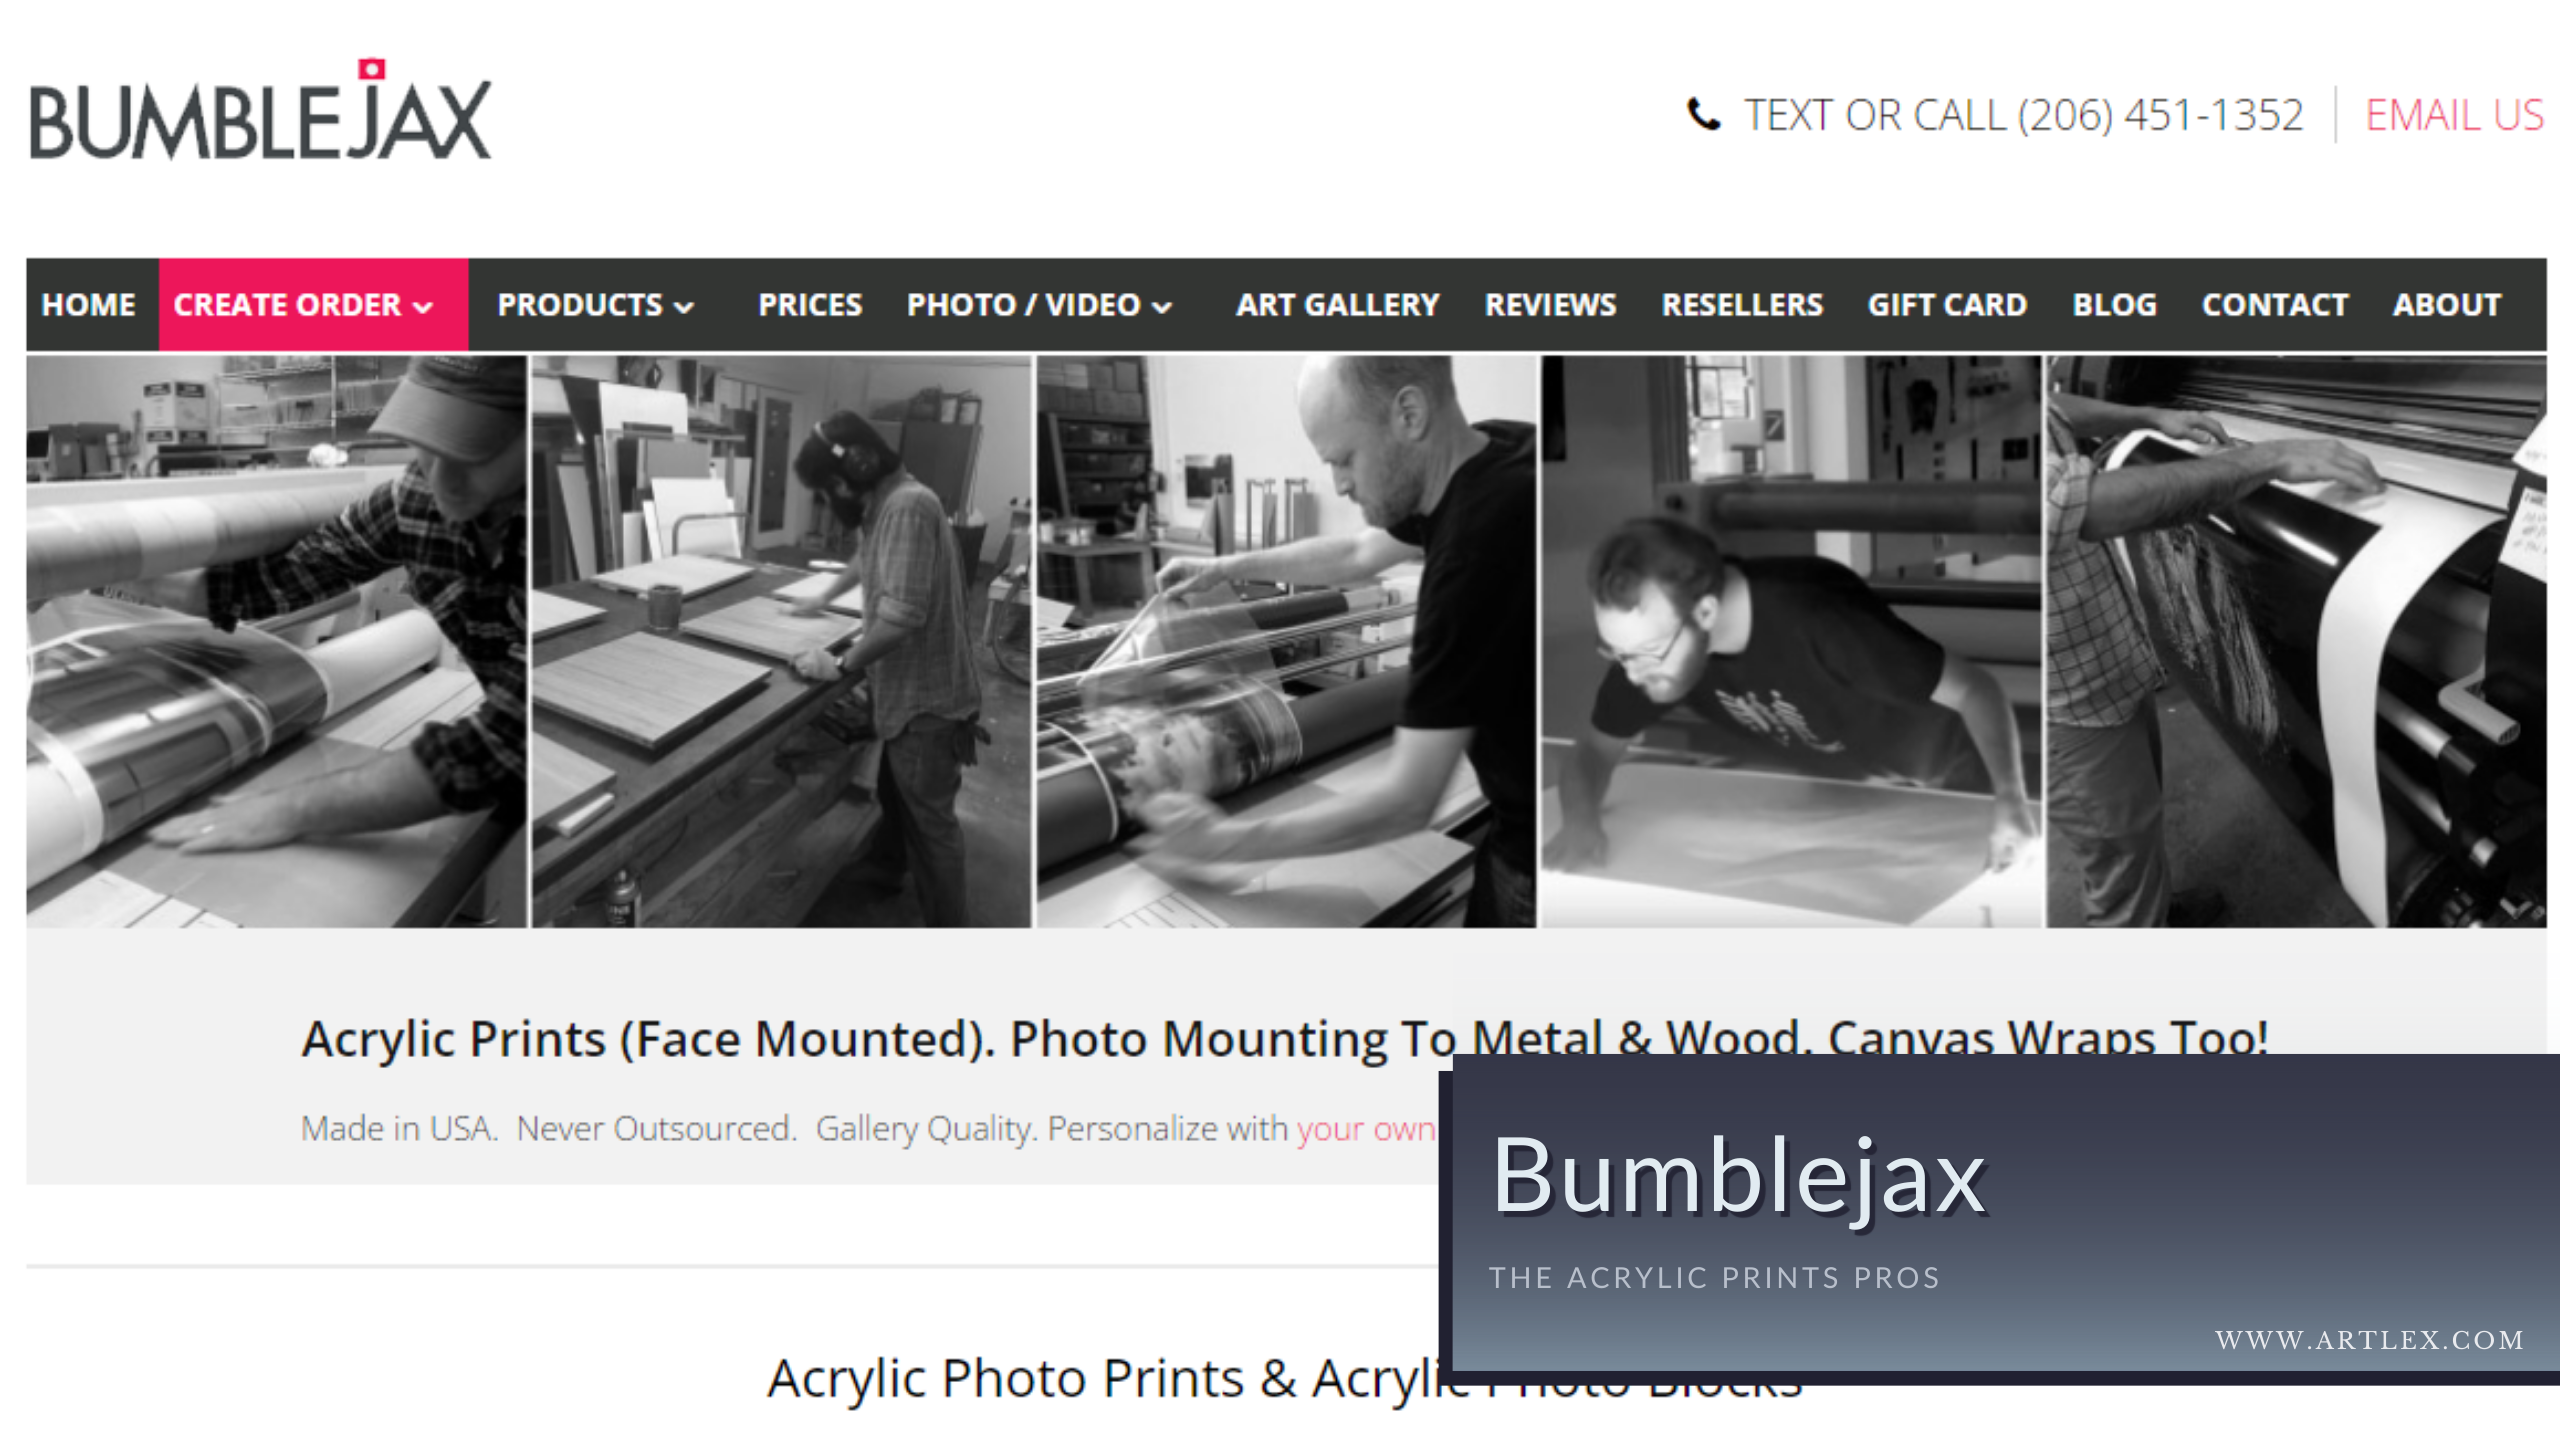 BumbleJax Acrylic Prints